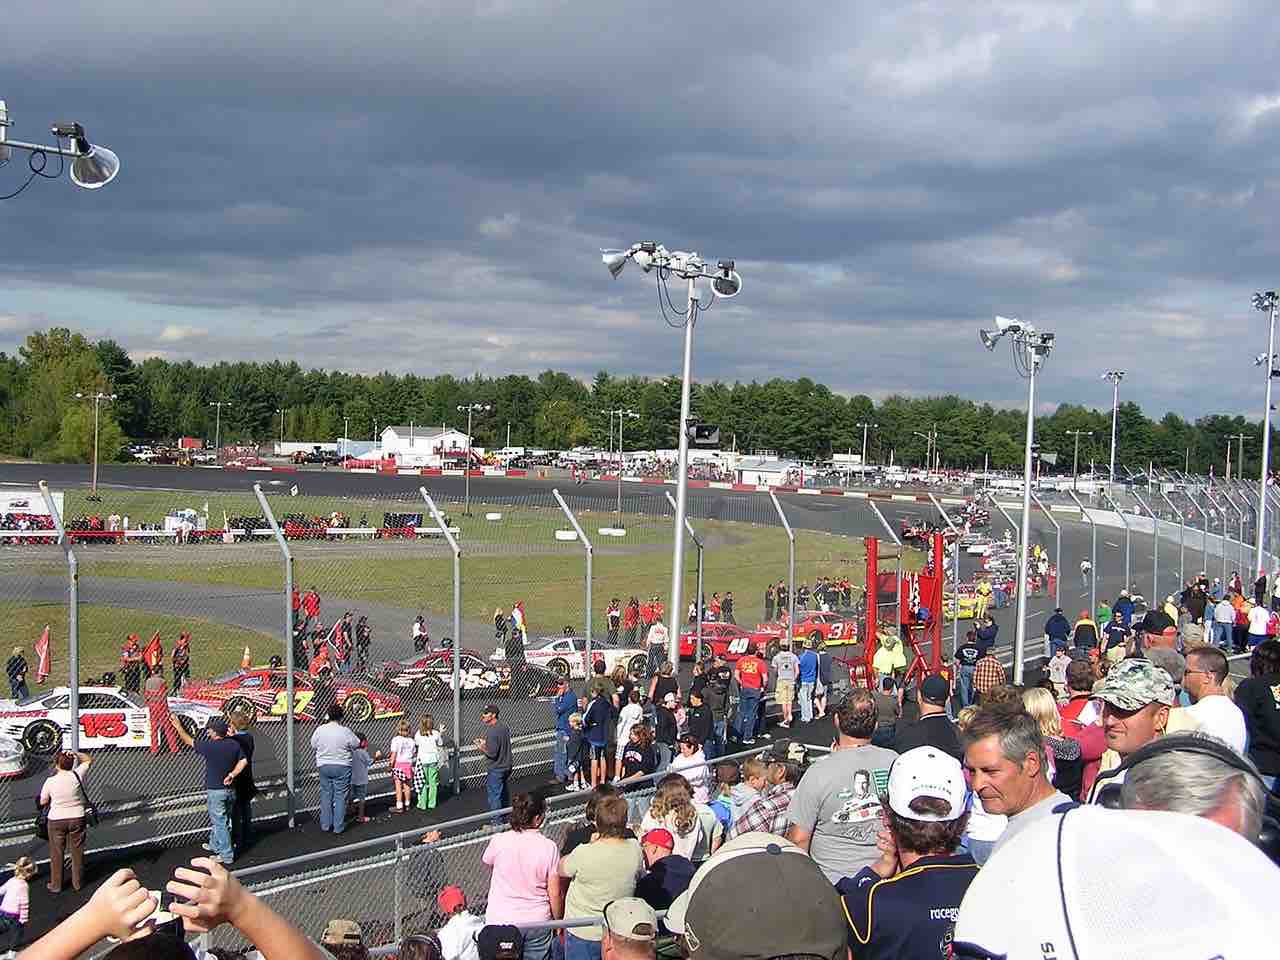 Airborne Speedway now known as Airborne Park Speedway – Randy Lewis